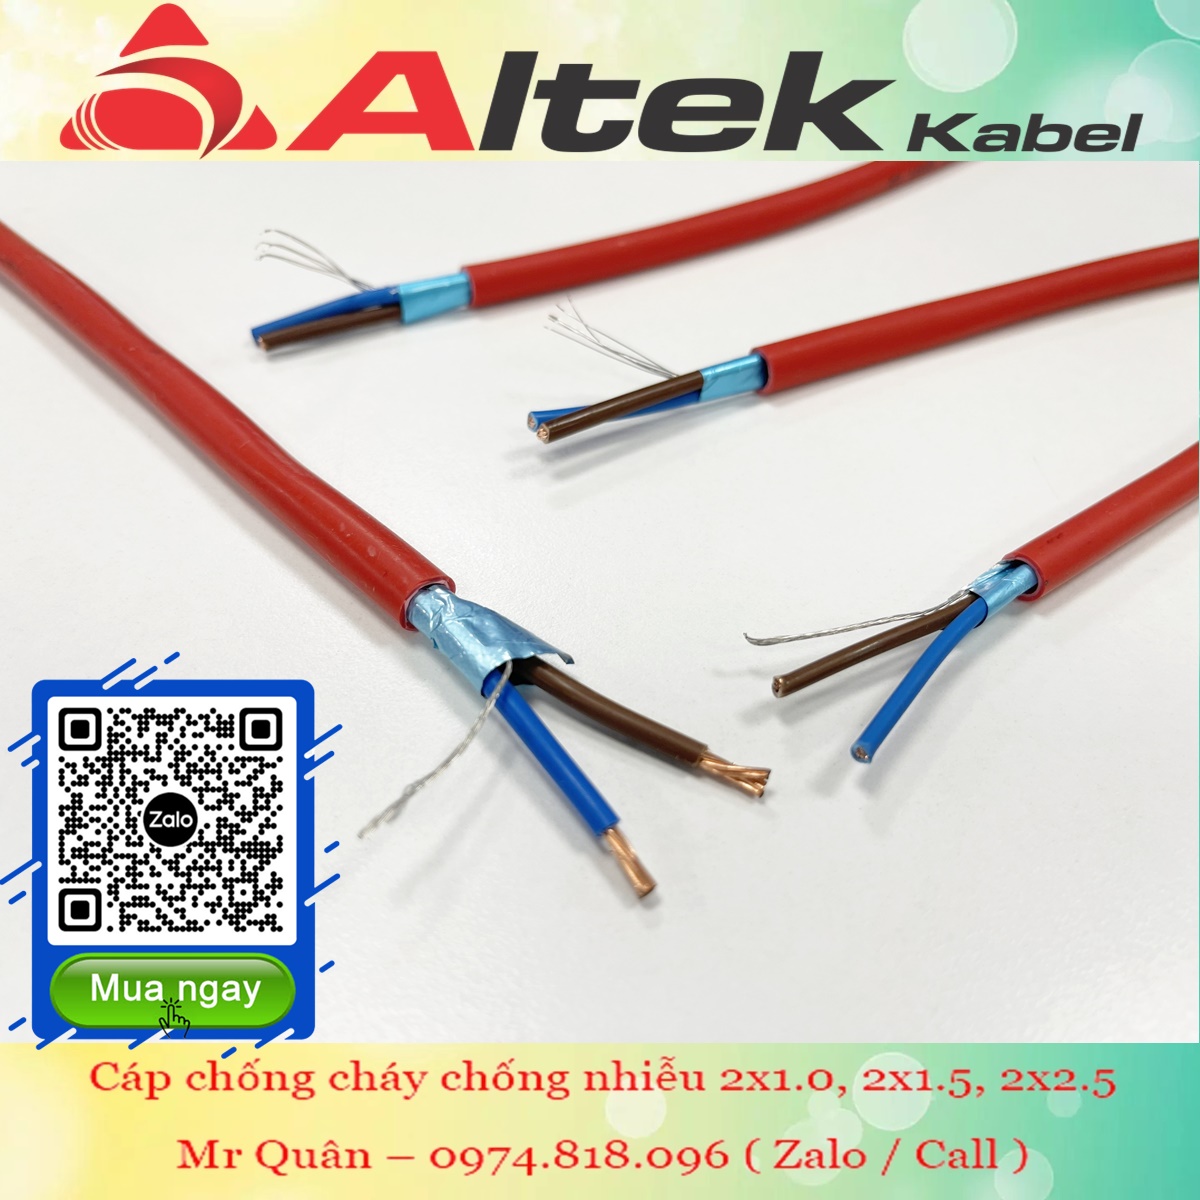 Altek Kabel: Cáp chống cháy 2 Core +AL+E